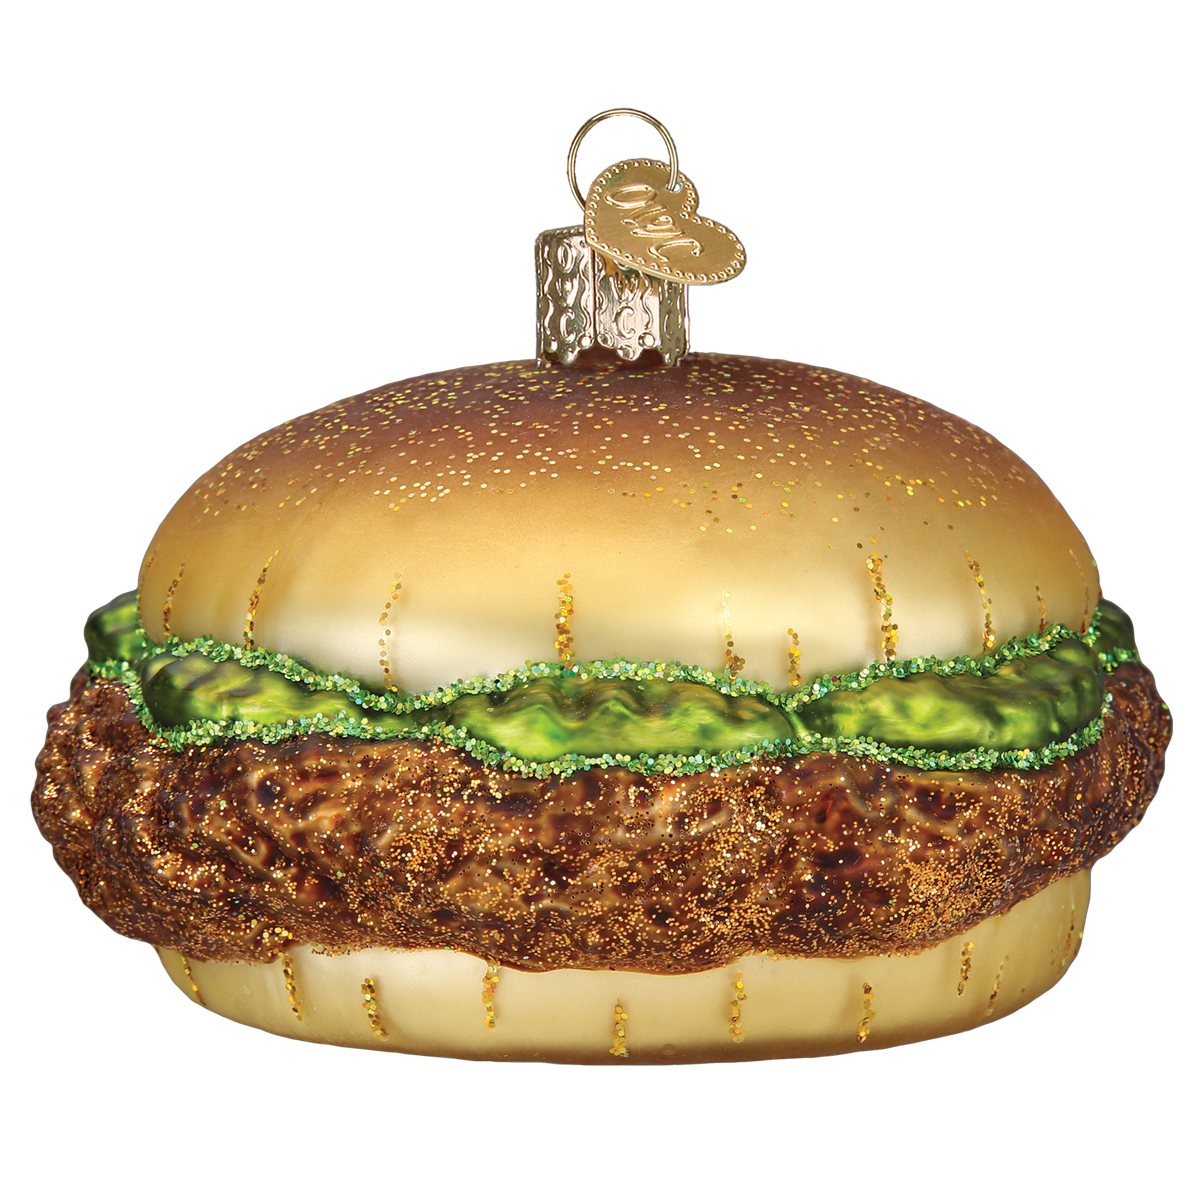 Chicken Sandwich Ornament